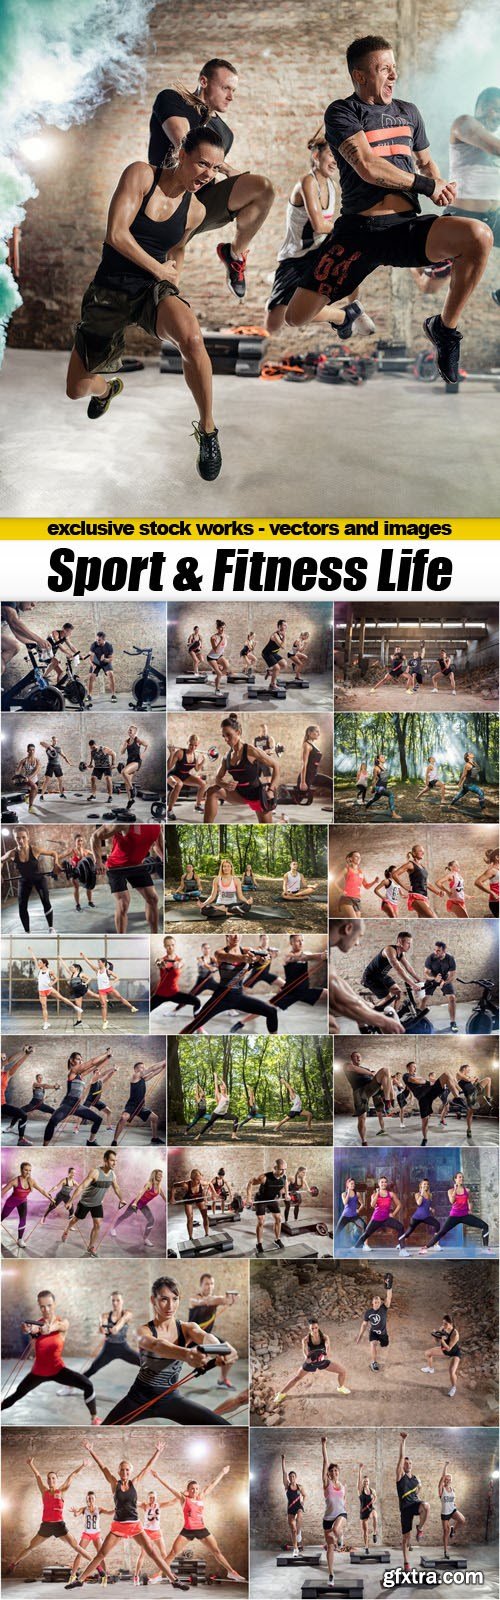 Sport & Fitness Life - 23xUHQ JPEG